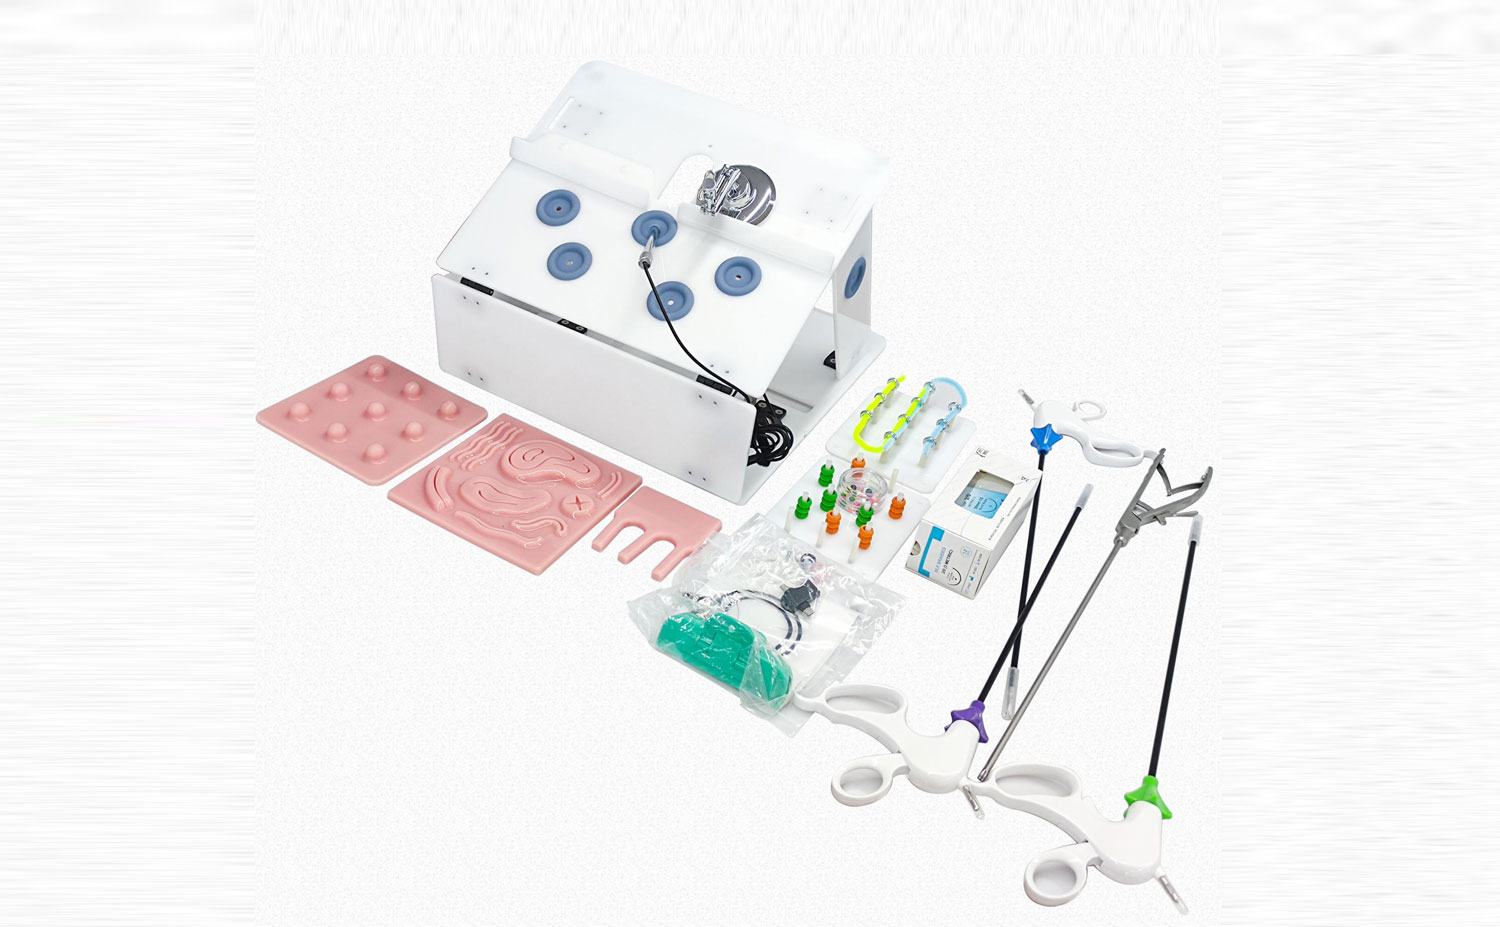 Smailmedical laparoskopik simülatör kurulum talimatları